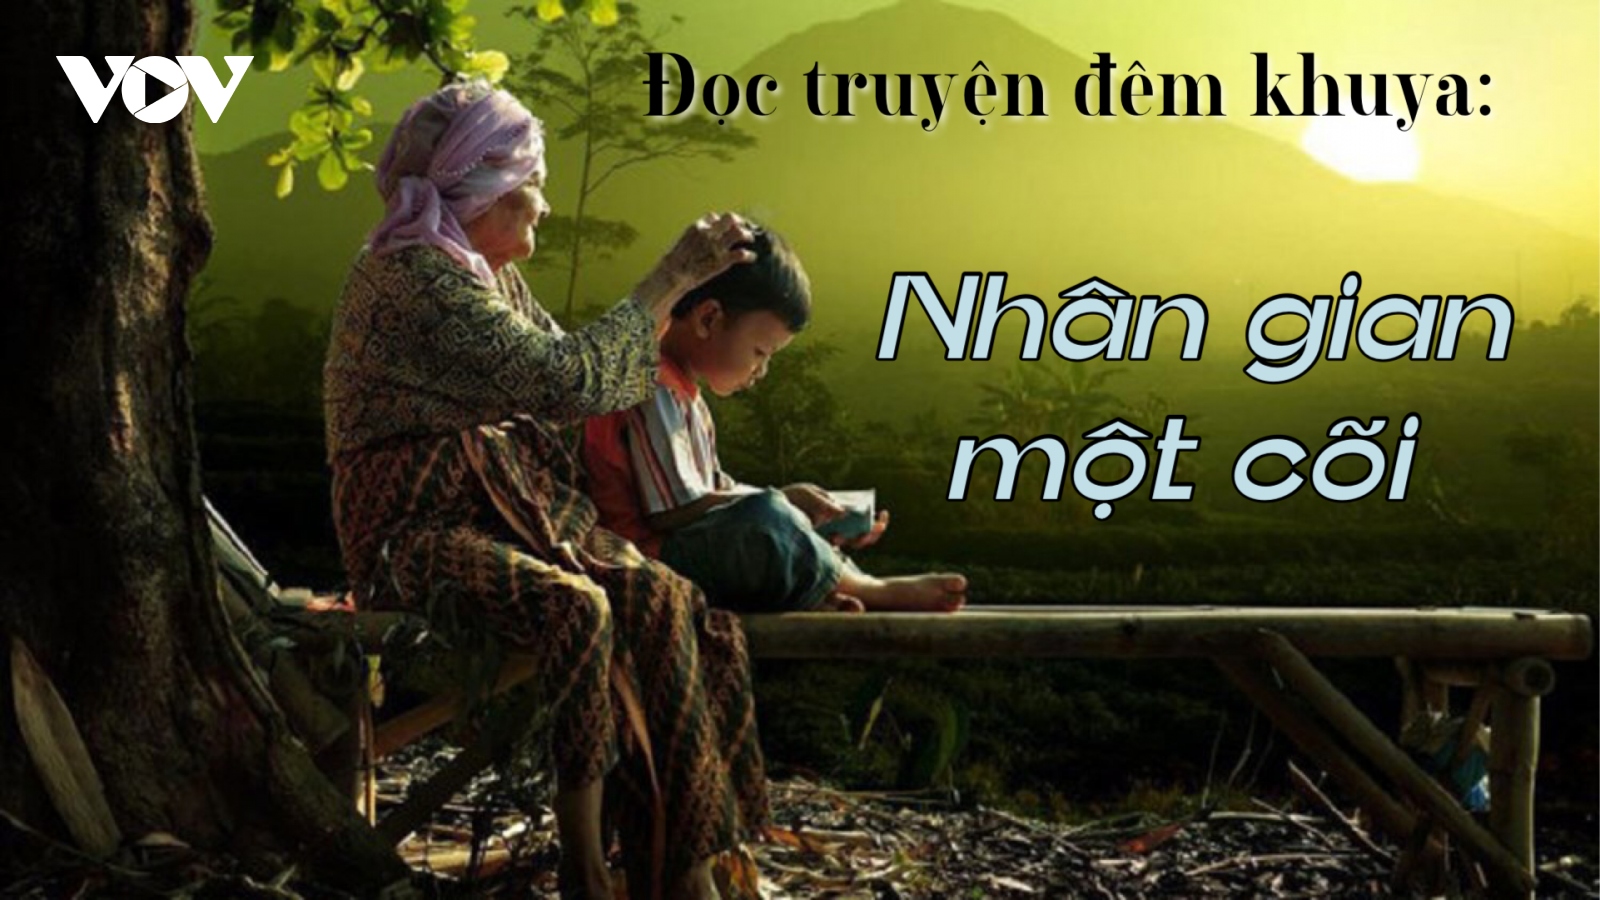 Làng quê Việt trong truyện ngắn “Nhân gian một cõi”